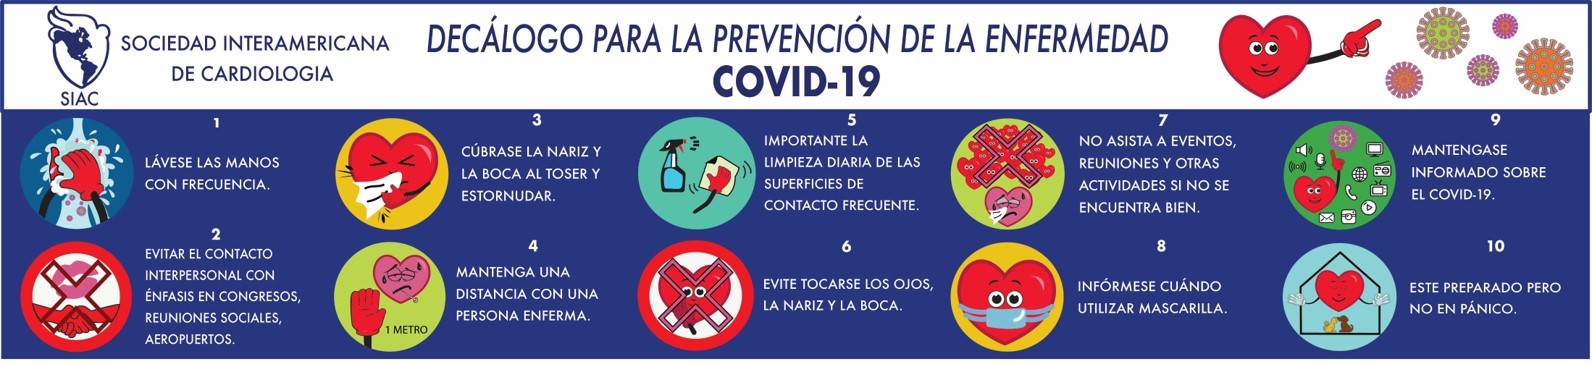 Decálogo de la sociedad interamericana de cardiologia (siac) para la prevención de la enfermedad covid-19